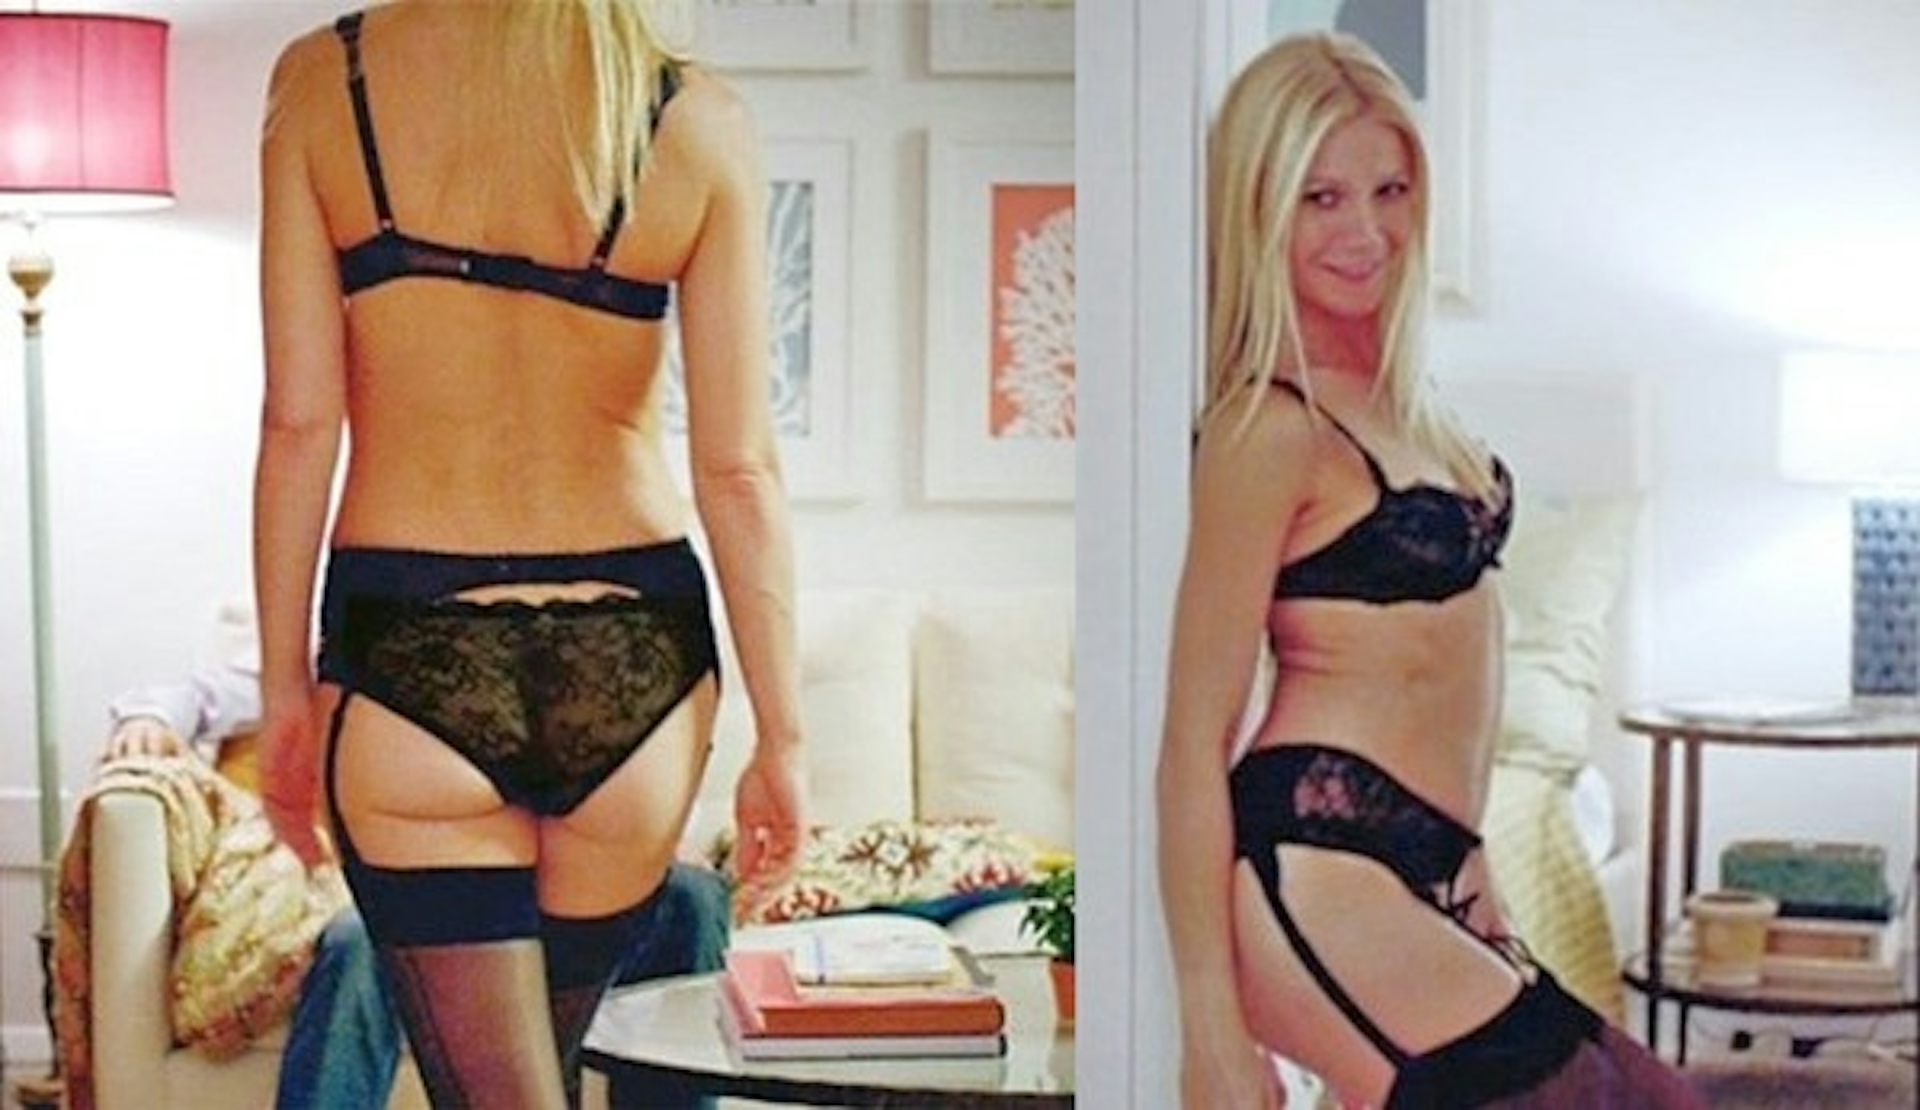 Gwyneth paltrow thanks sharing sexy